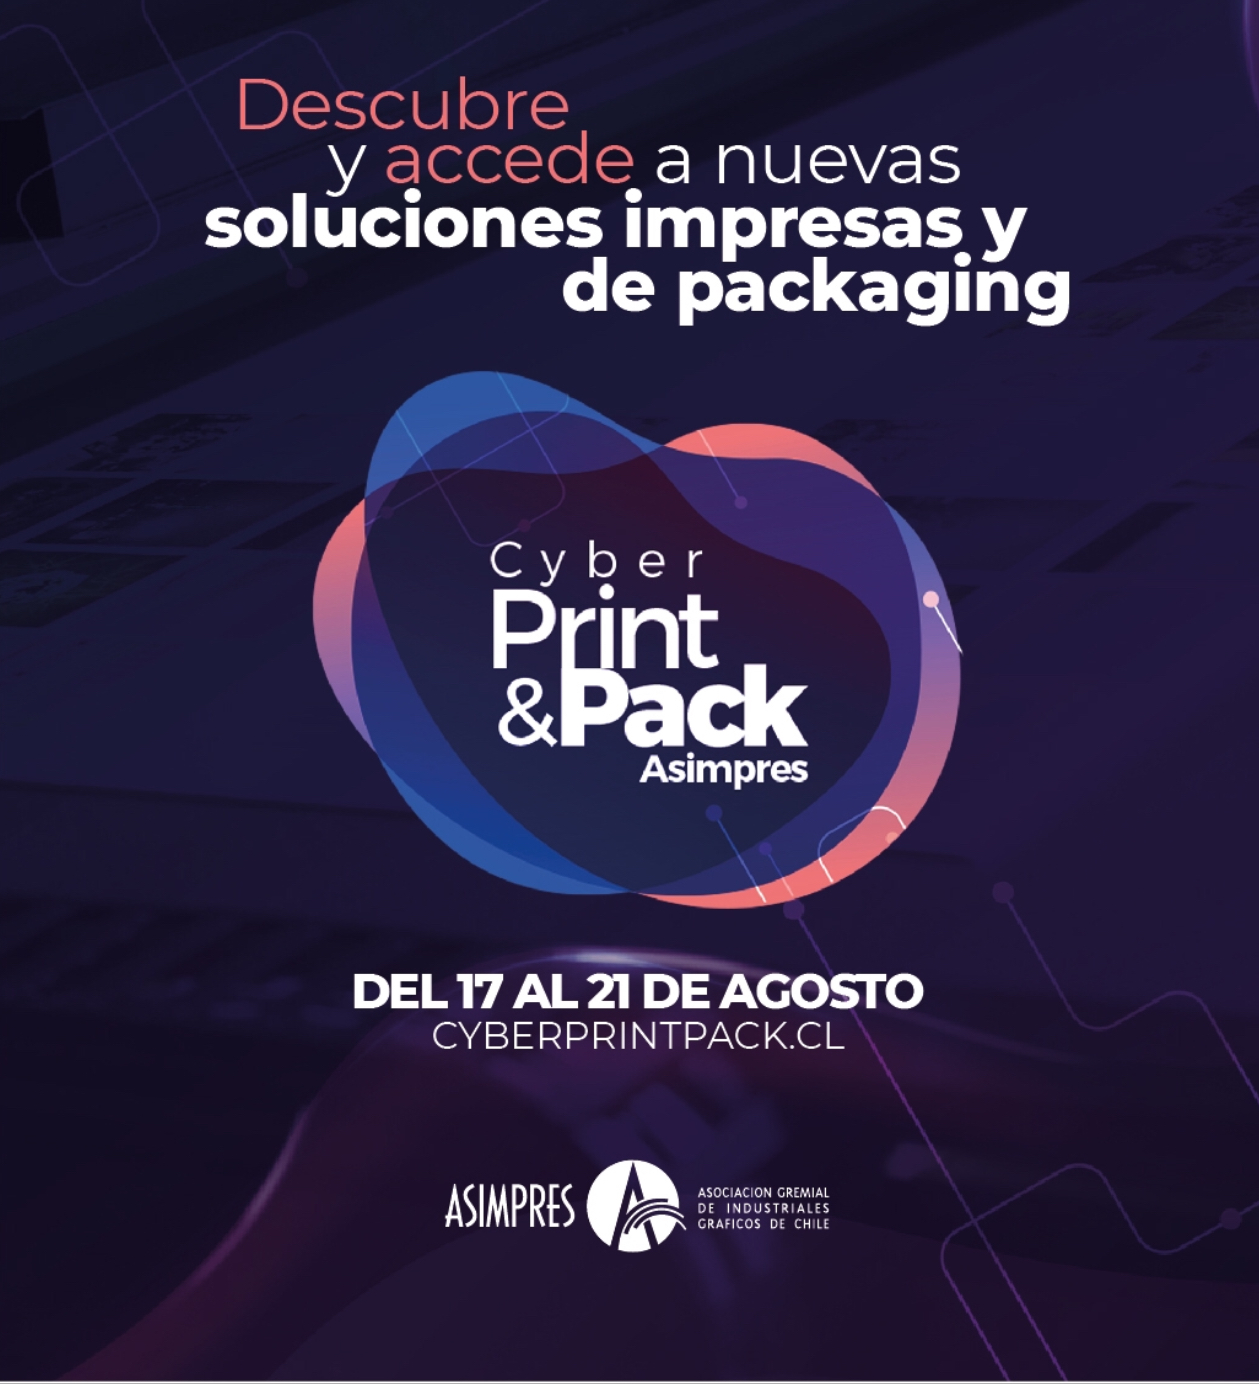 Cyber Print & Pack 2020 acción online de oferta de servicios de la industria gráfica